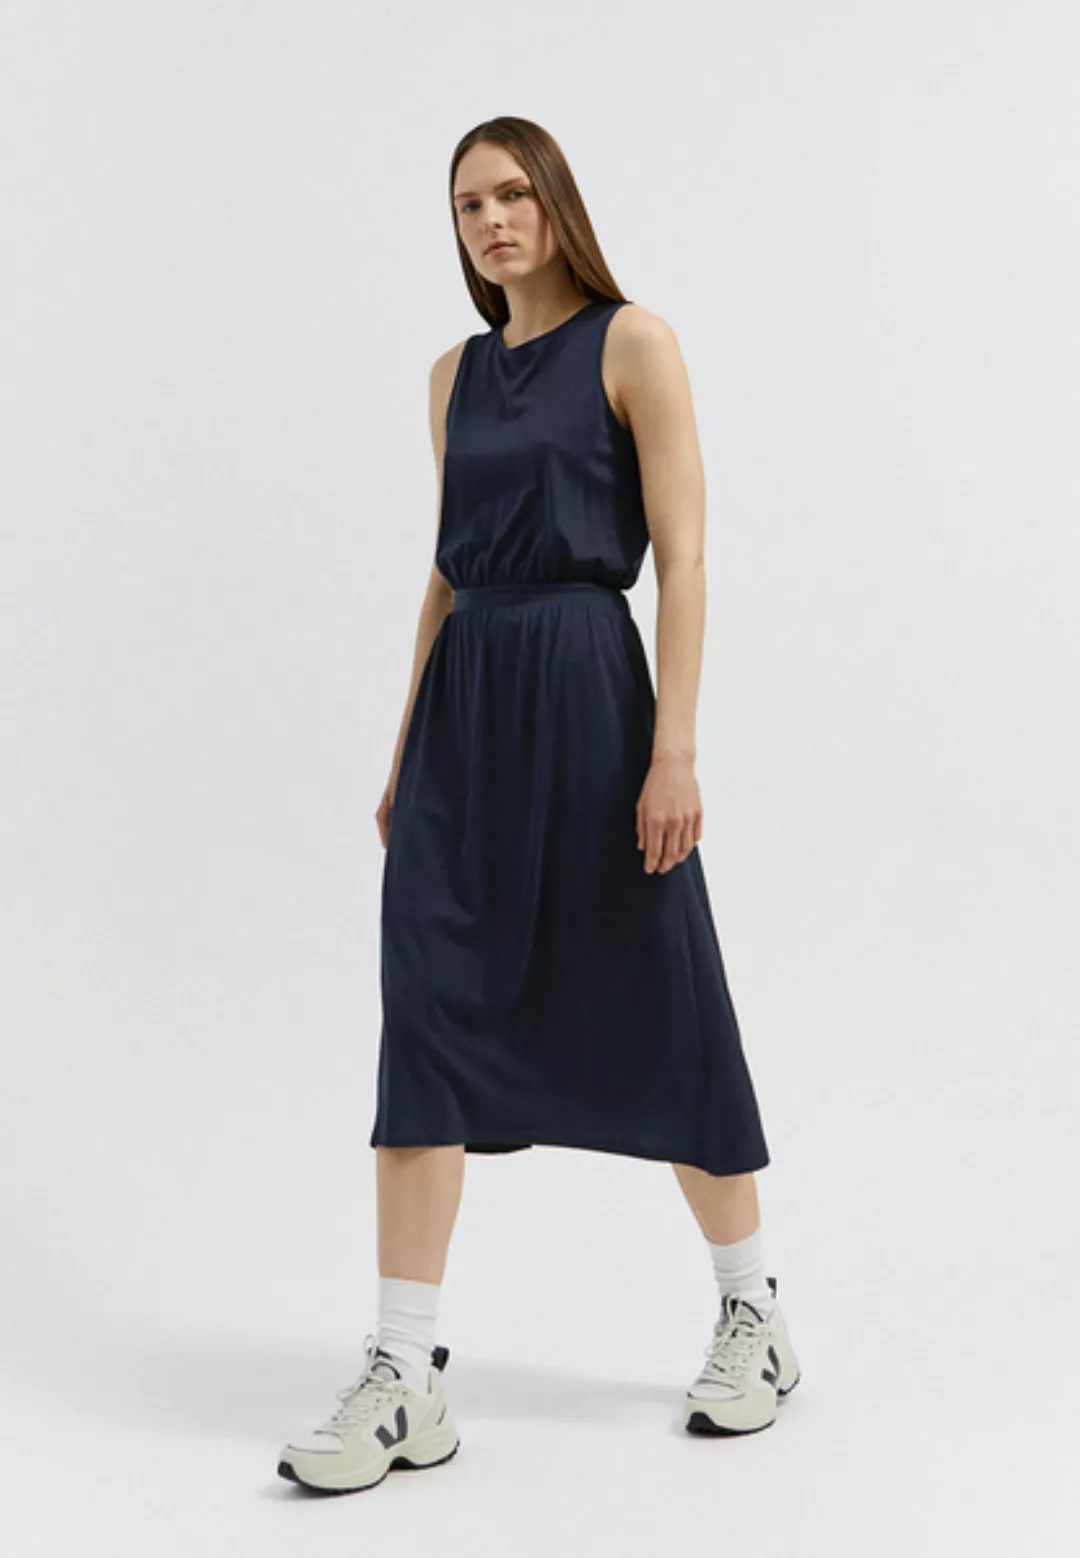 Laminaa - Damen Kleid Aus Tencel Lyocell Mix günstig online kaufen